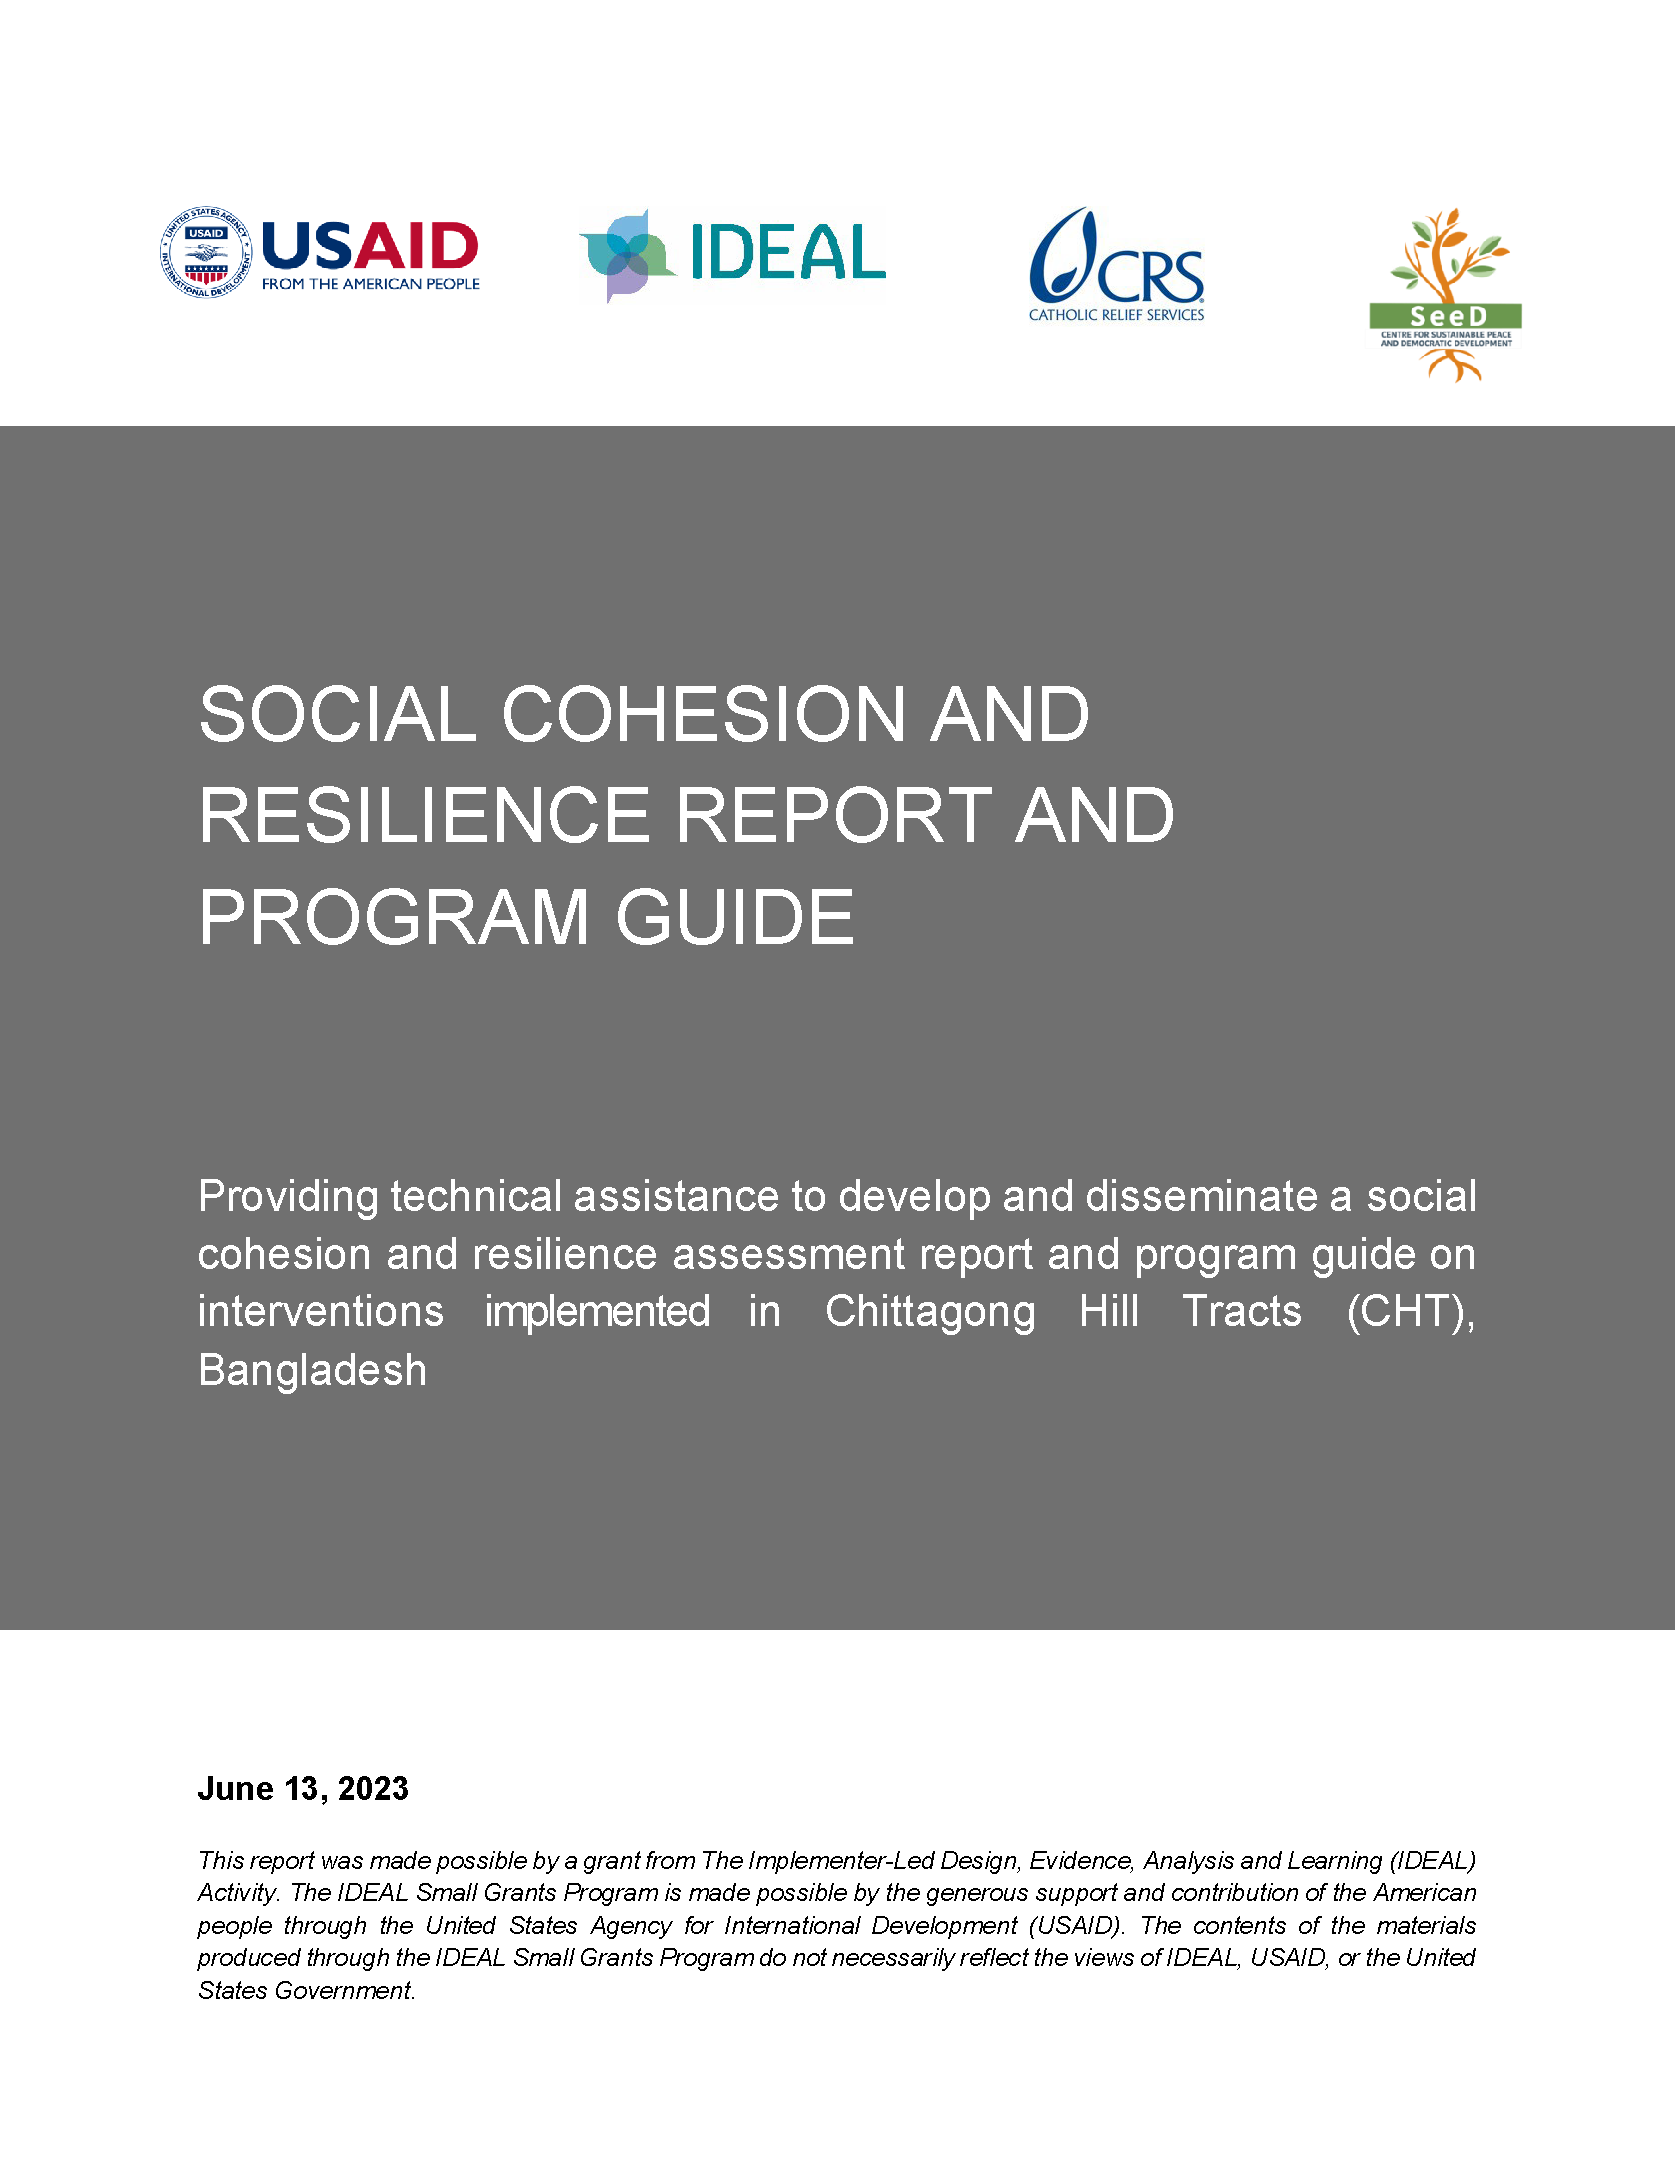 Page de couverture du rapport sur la cohésion sociale et la résilience et du guide du programme